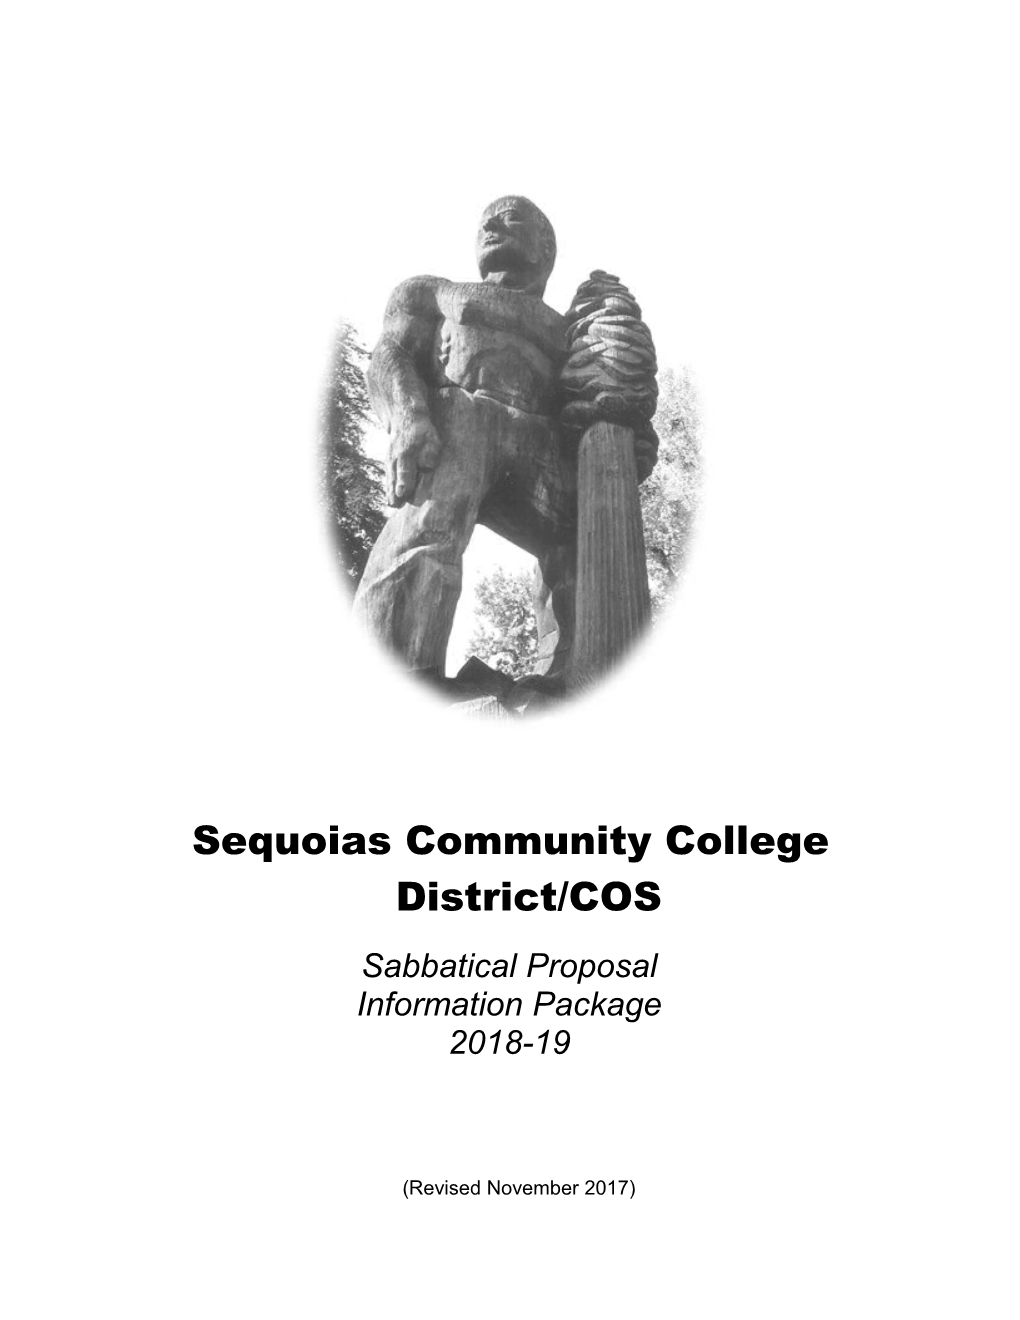 Sequoias Community College District/COS